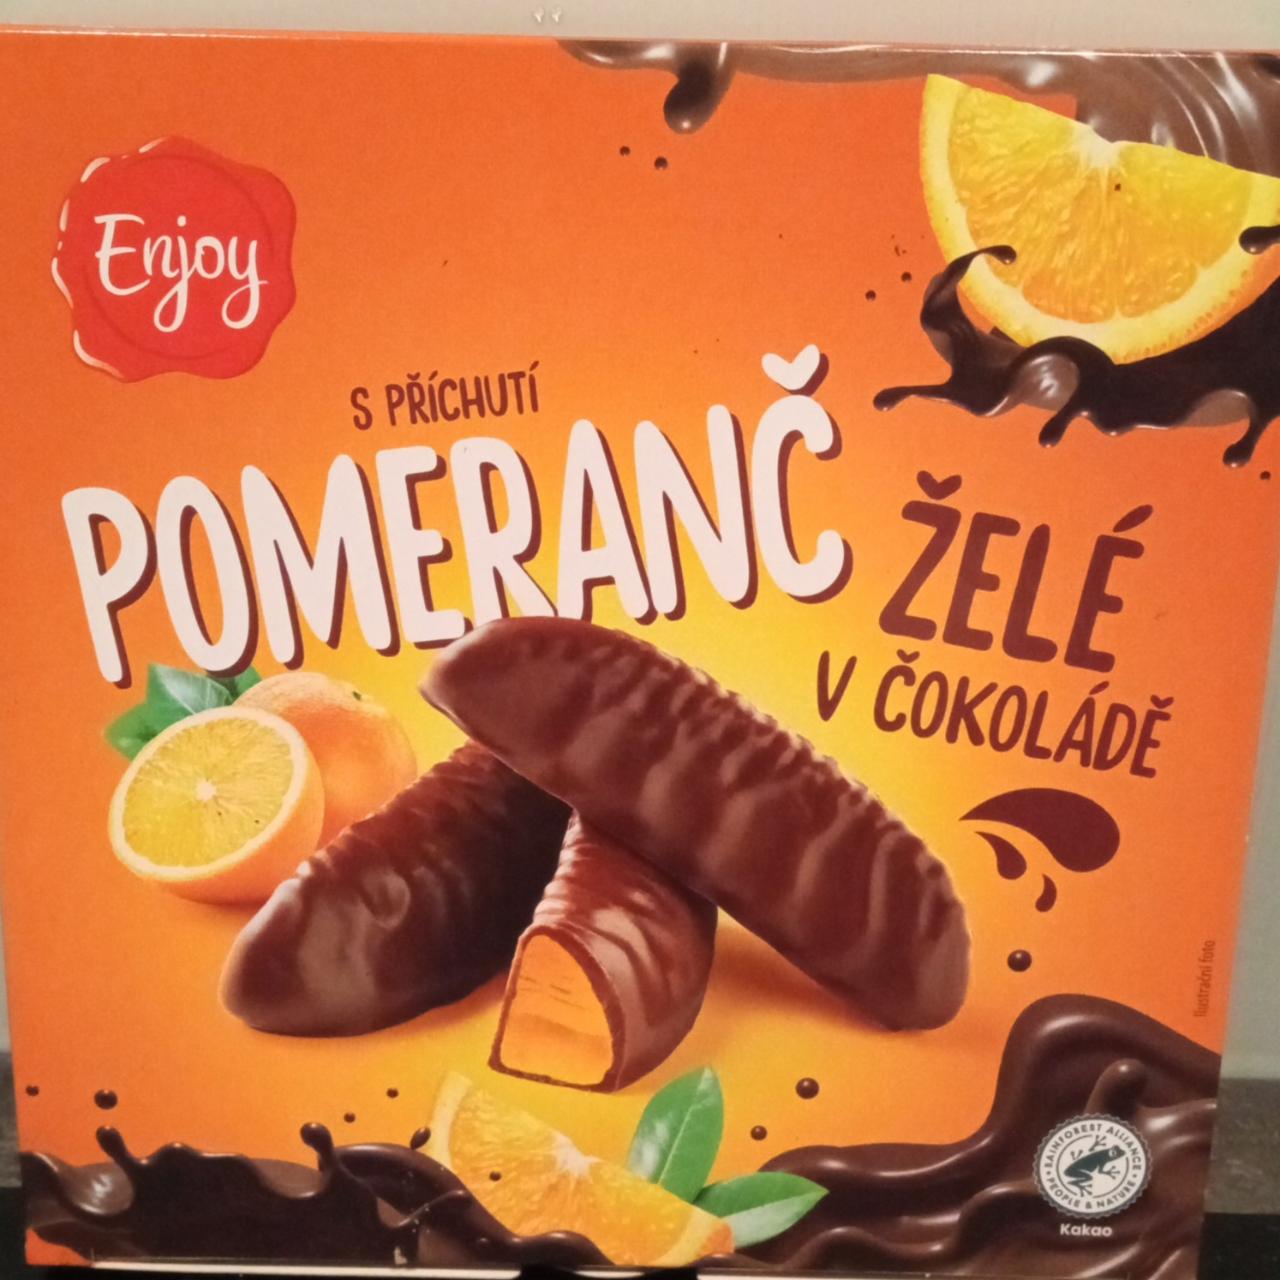 Fotografie - Želé v čokoládě s příchutí pomeranč Enjoy